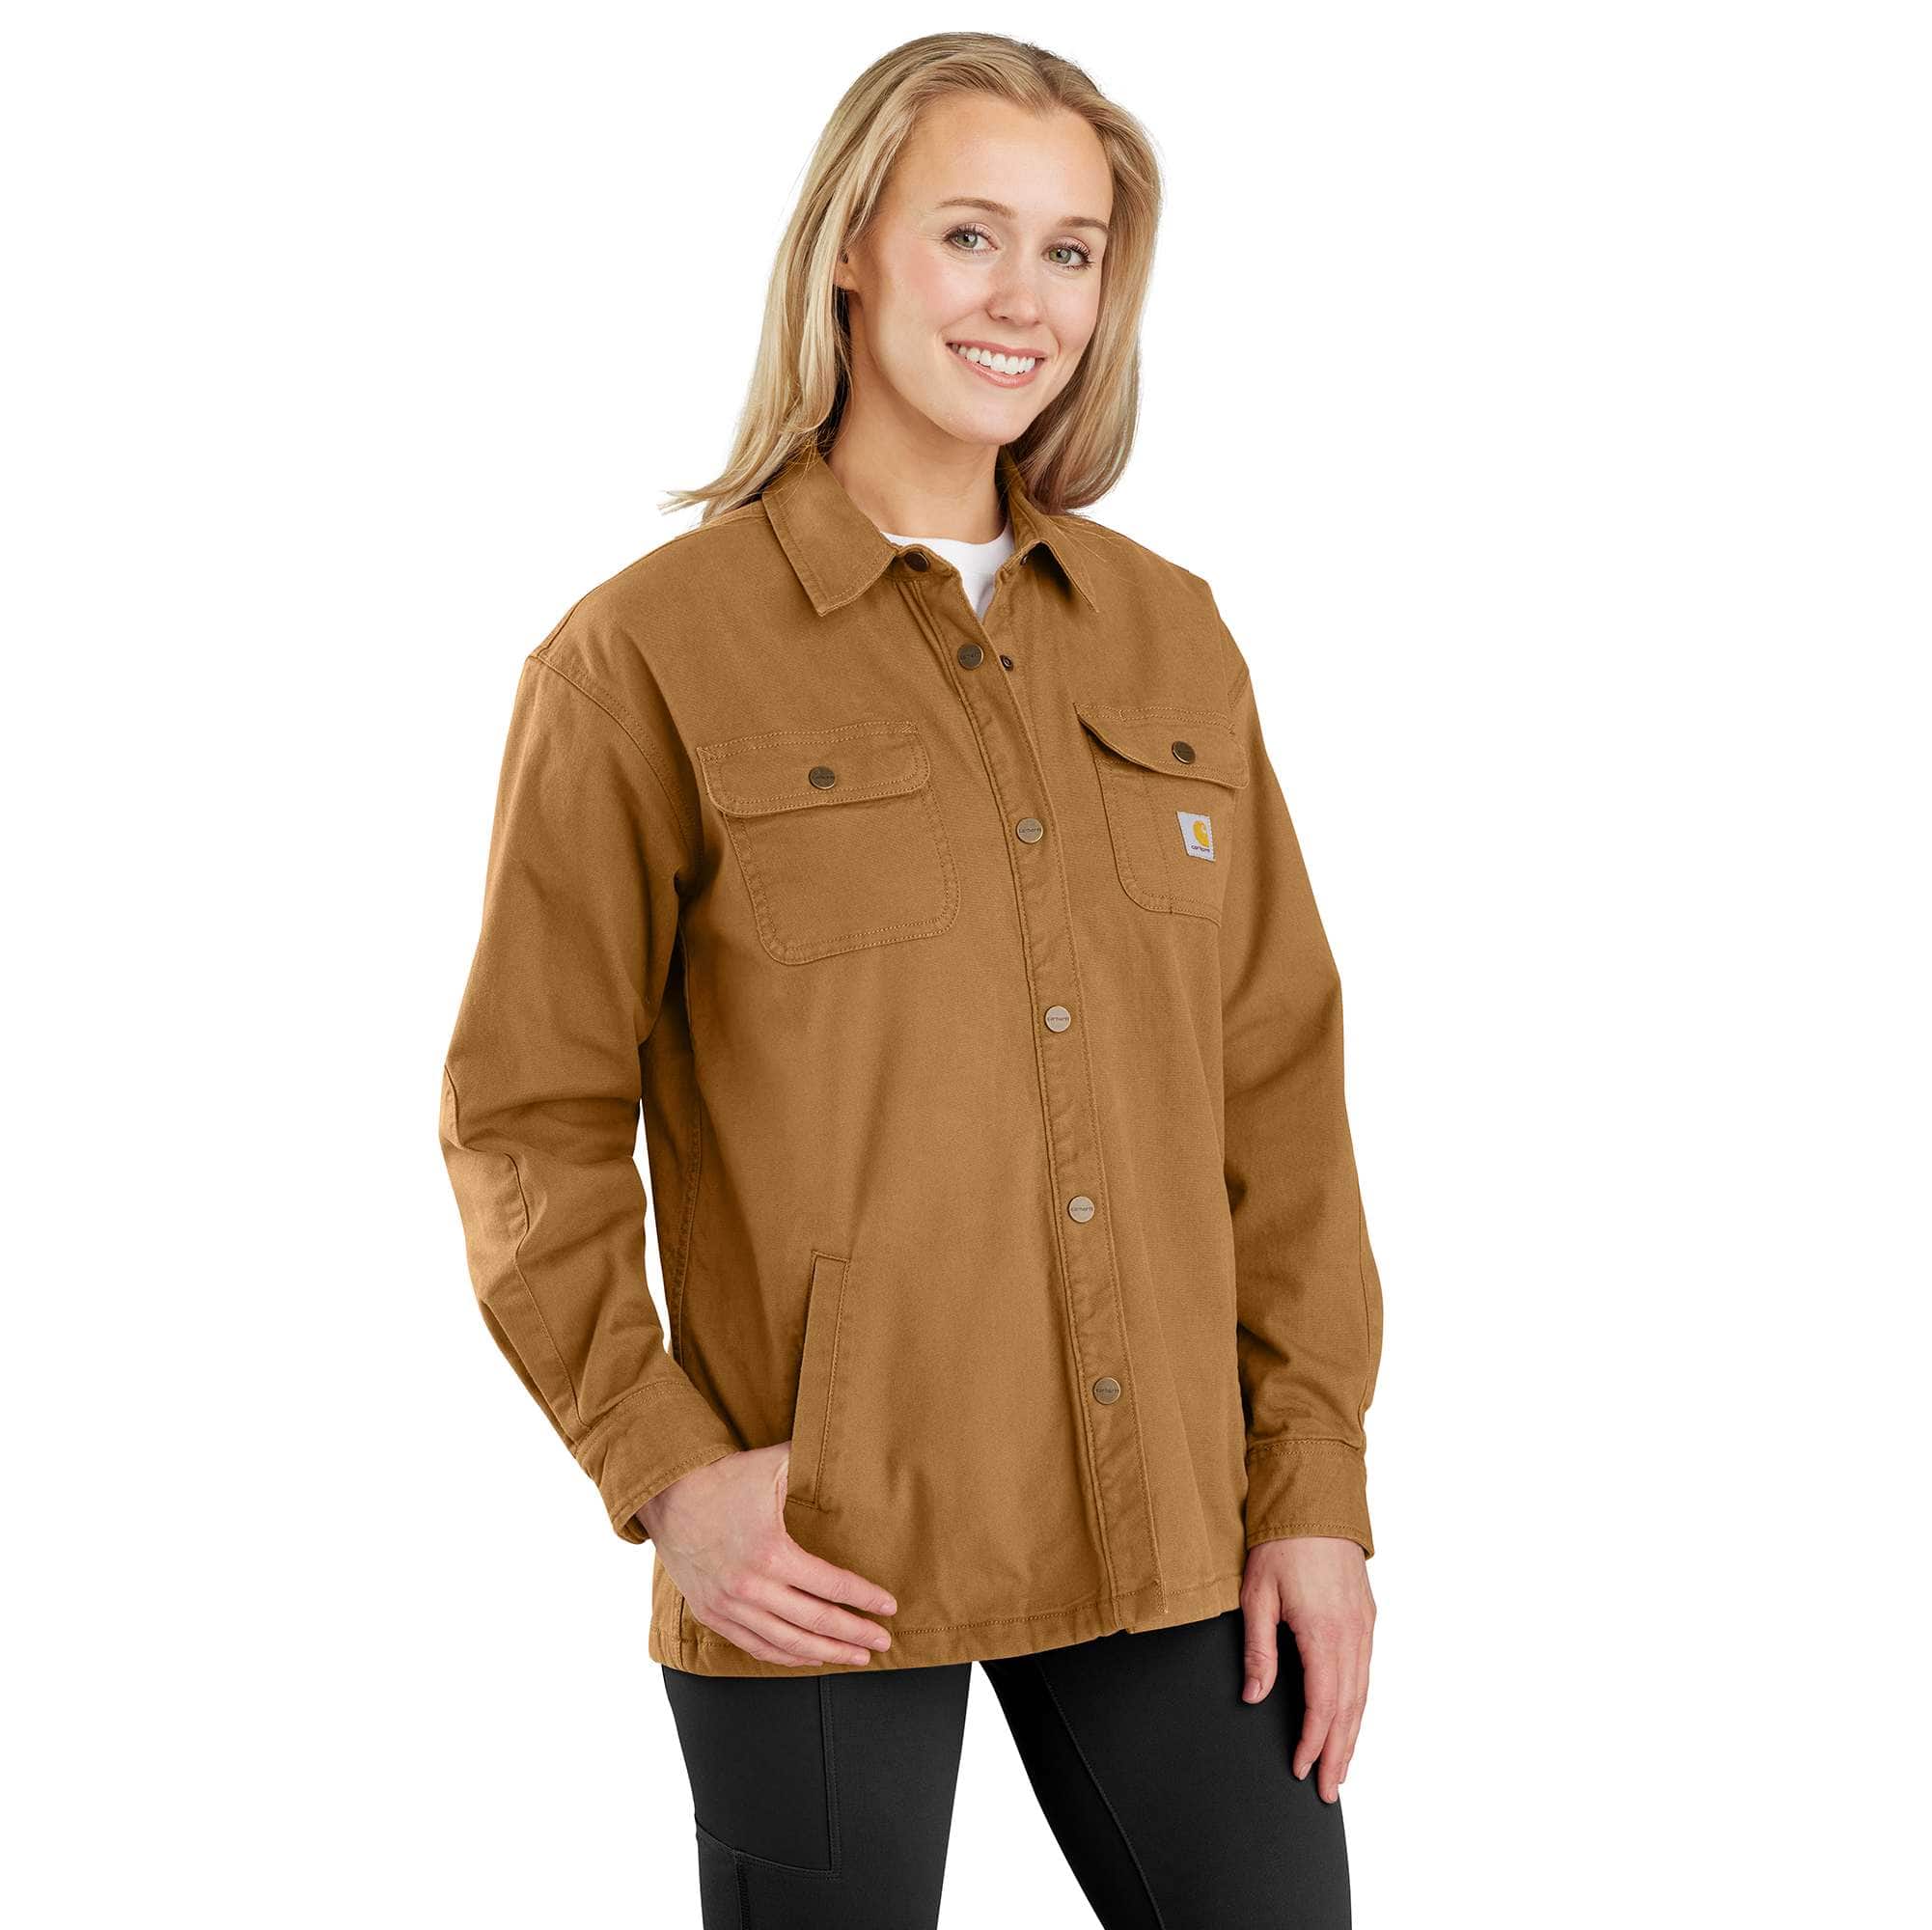 Carhartt Women's Rugged Flex Loose Fit Canvas Fleece Lined Shirt Jacke - XL - Carhartt Brown